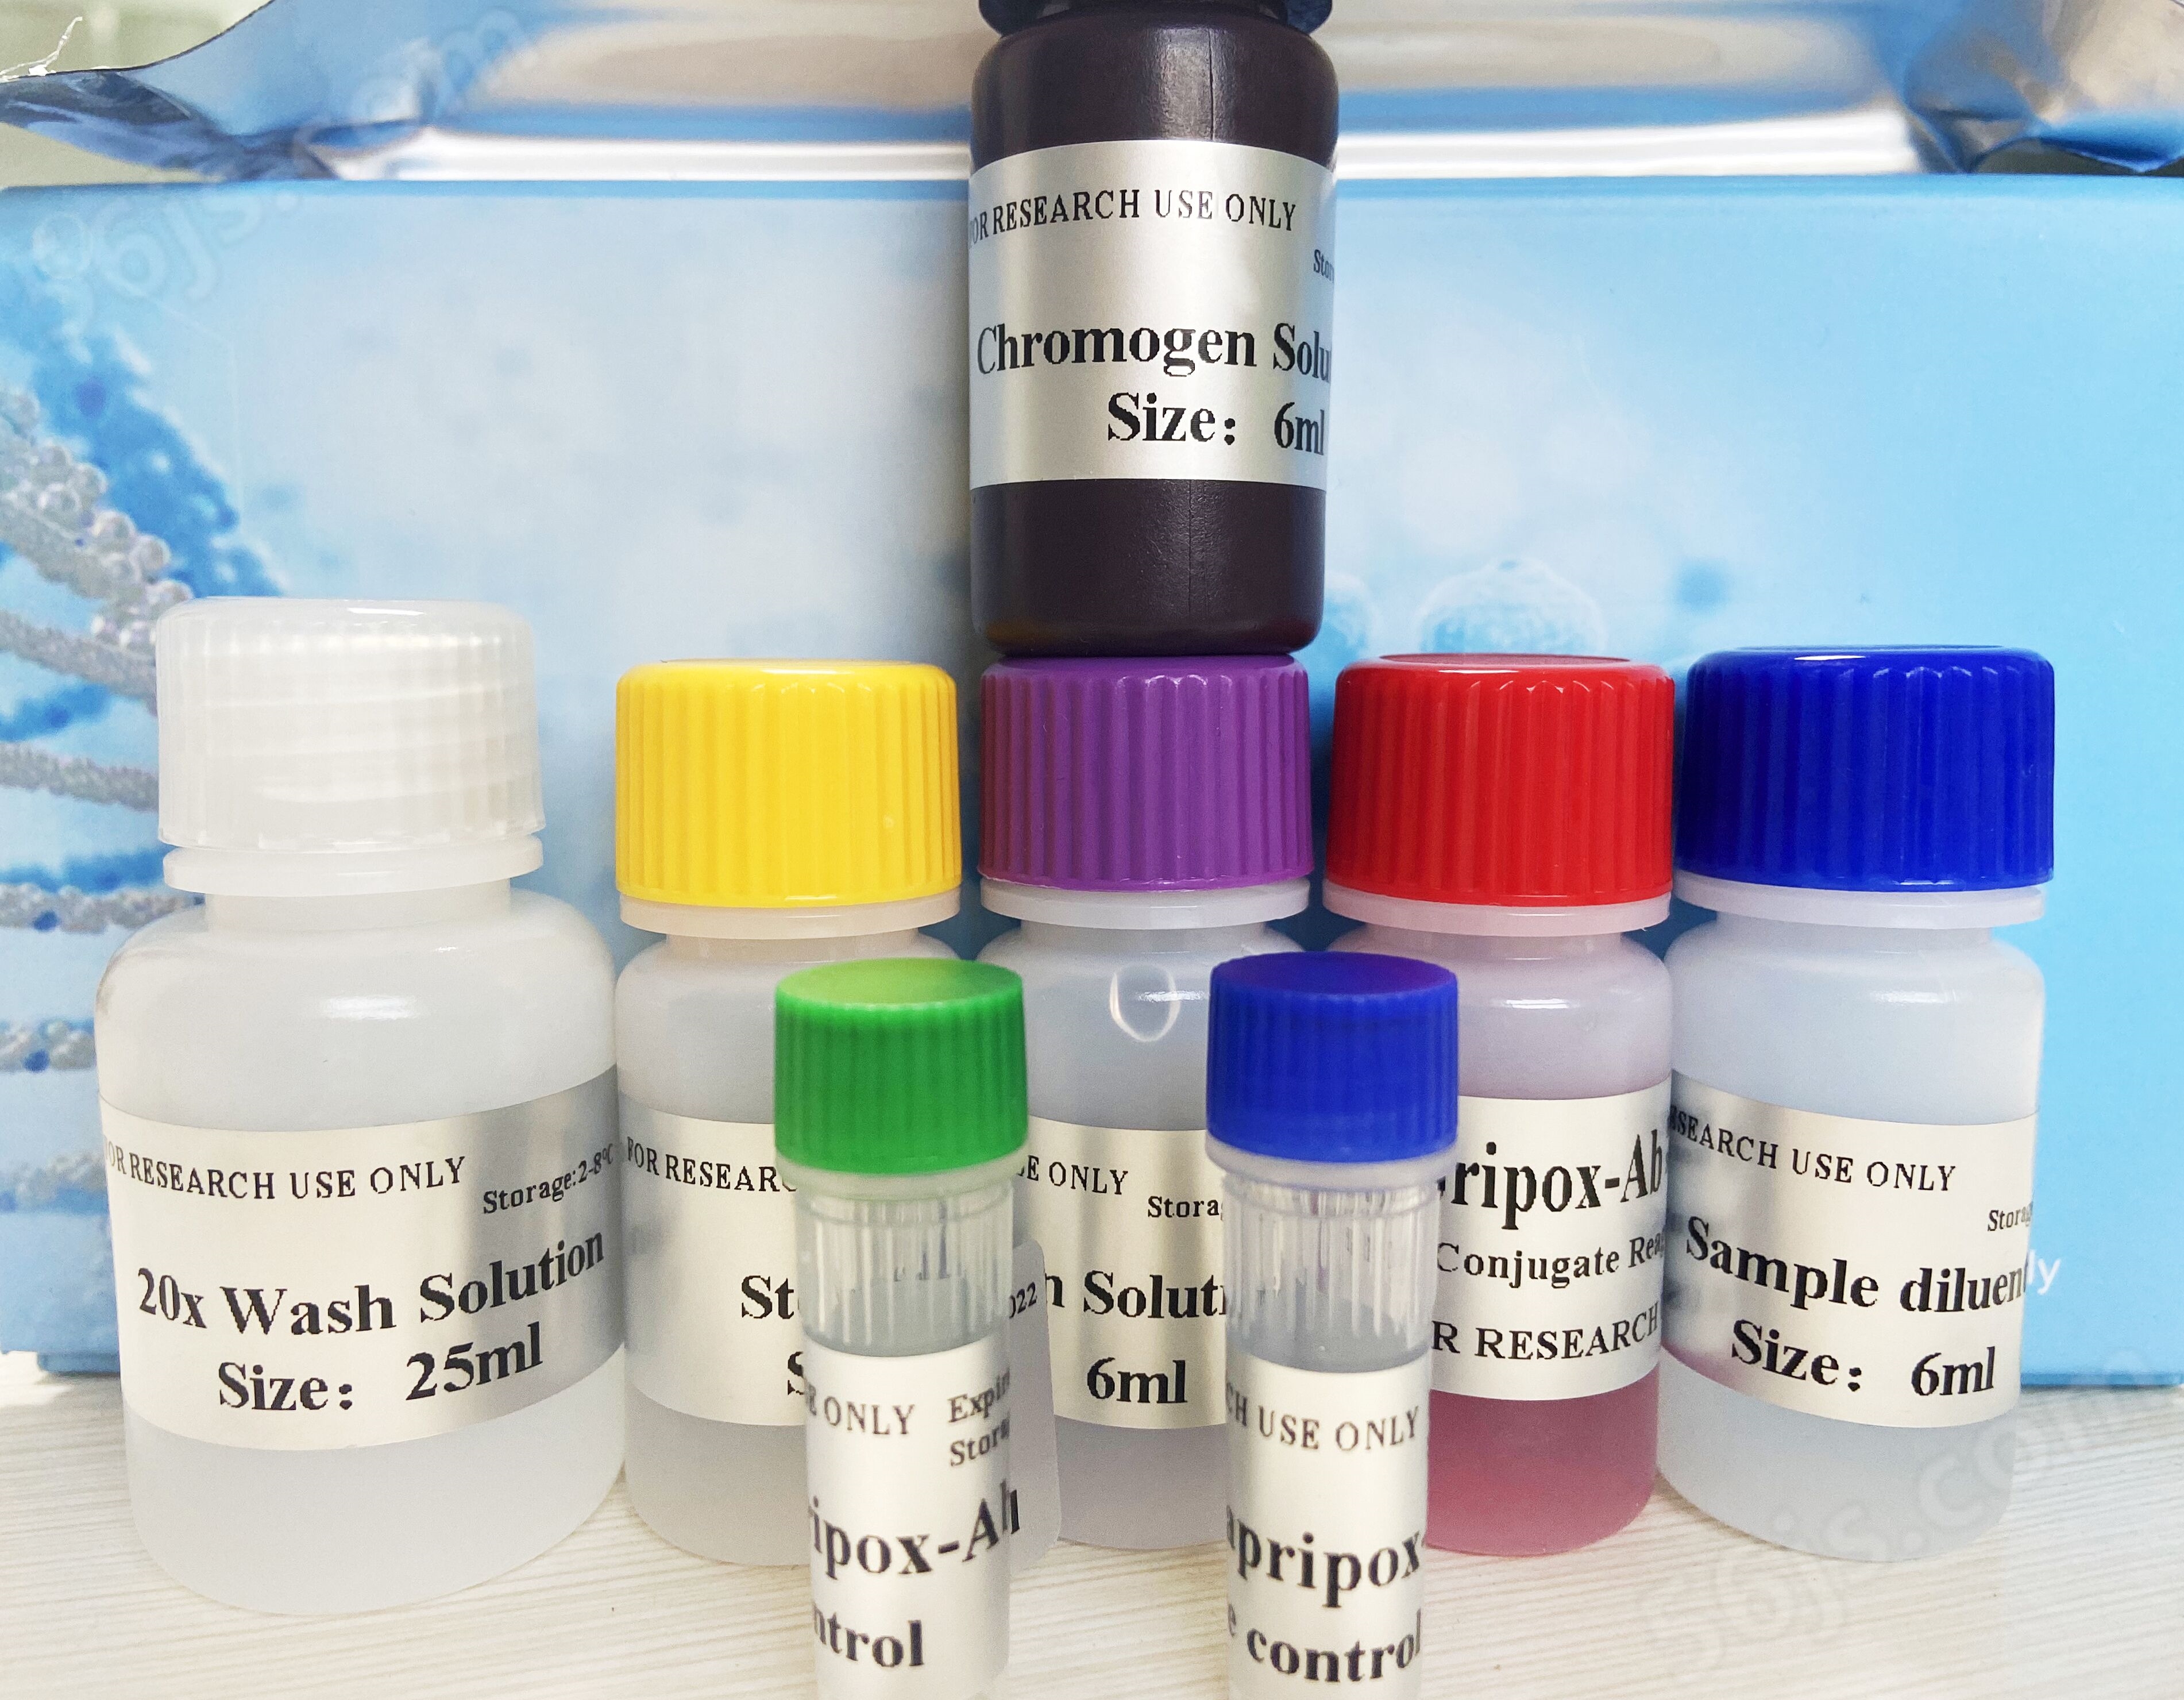 小鼠白细胞介素2ELISA检测试剂盒价格